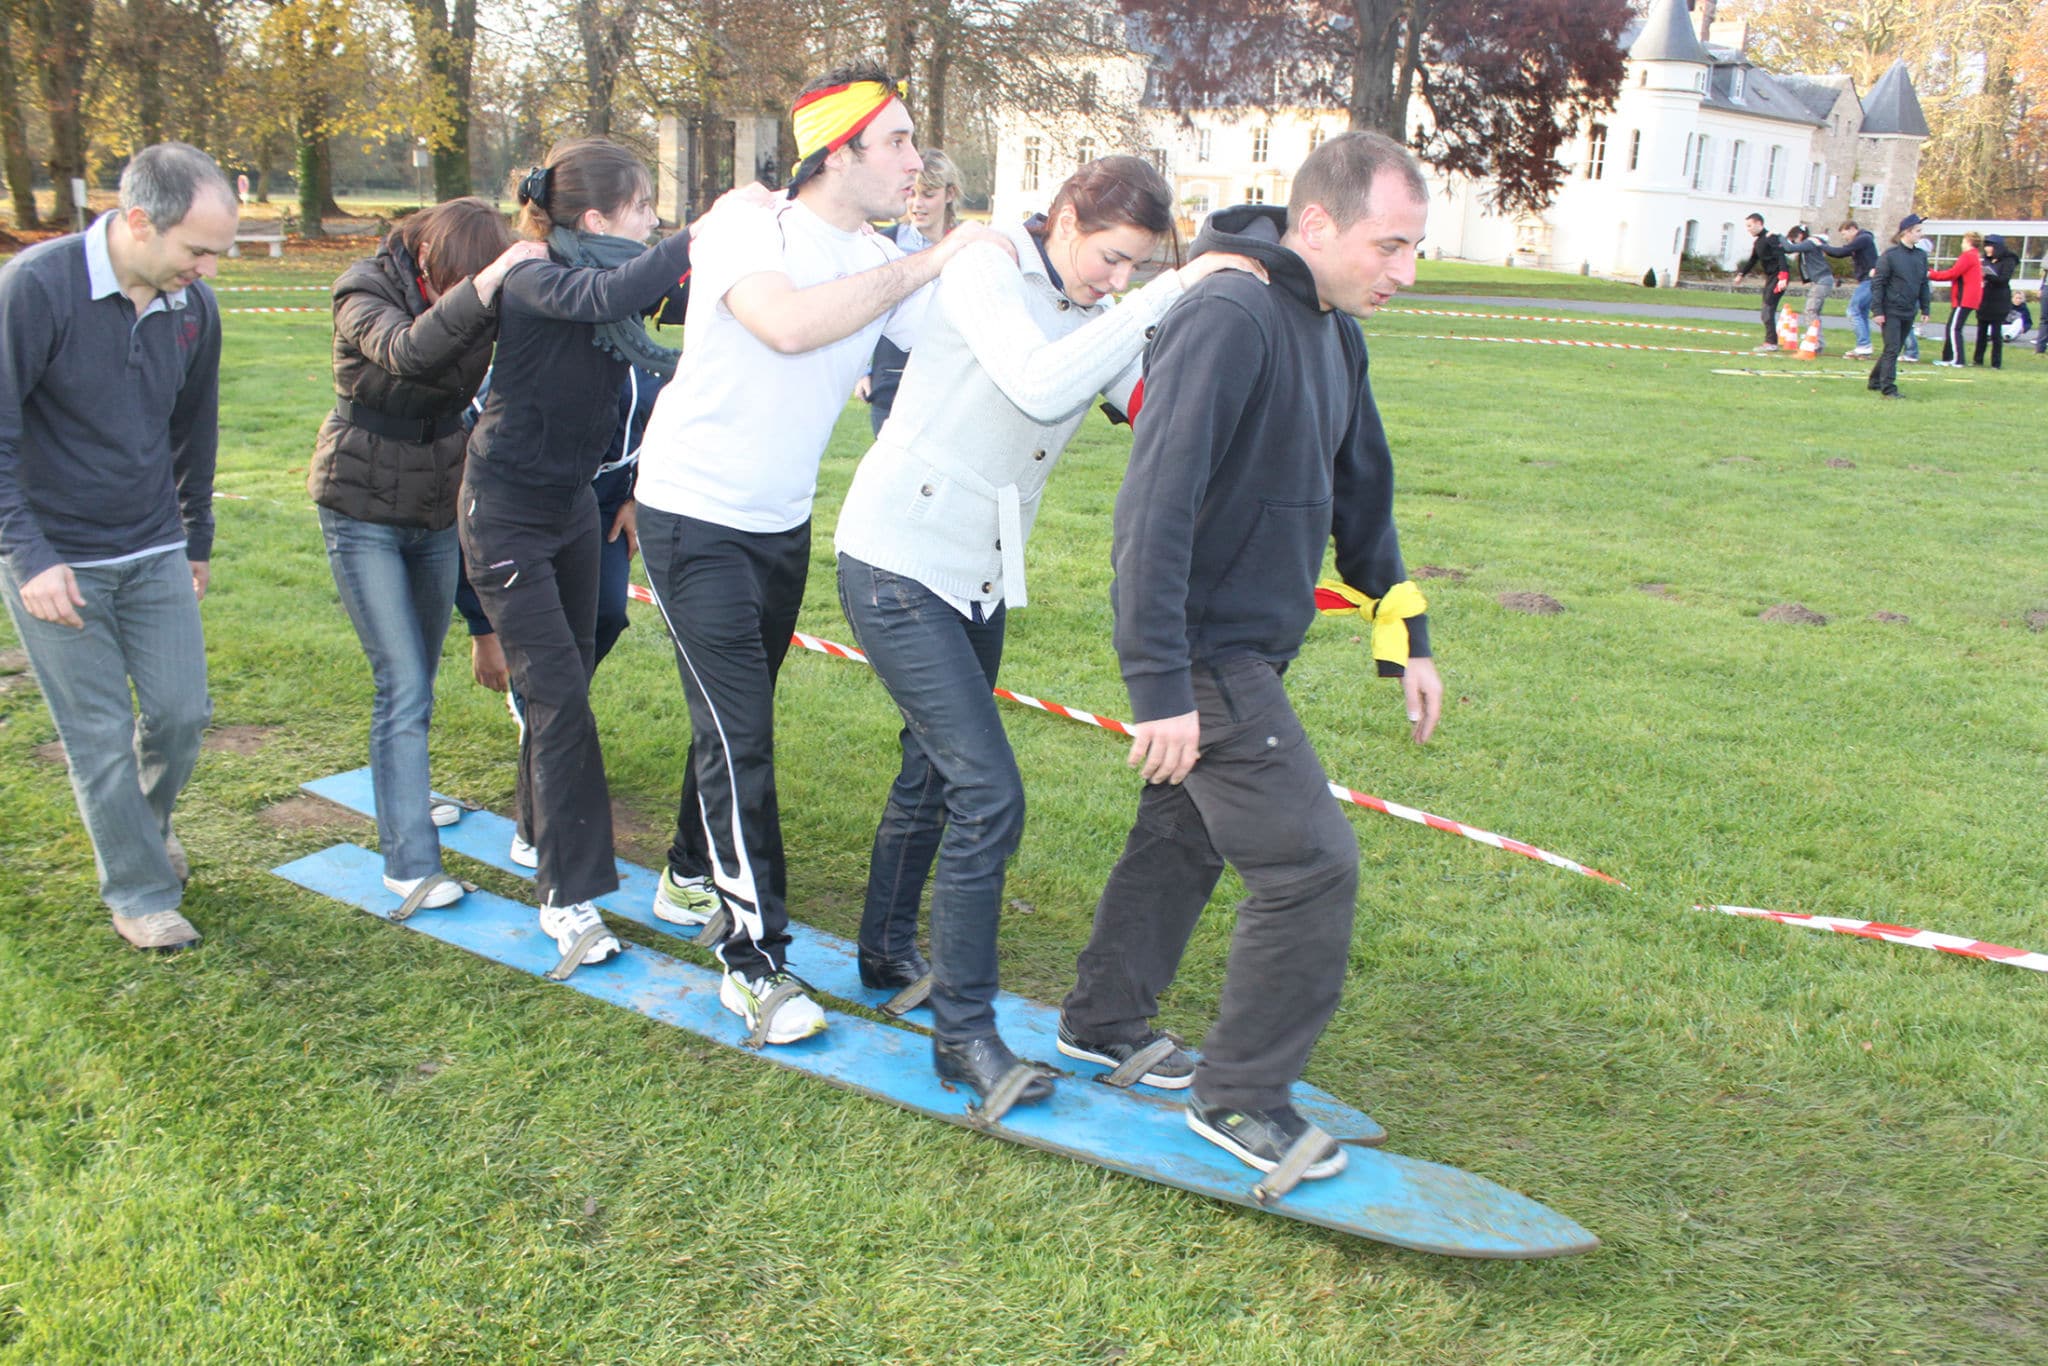 Les participants lors de l'épreuve des skis géants